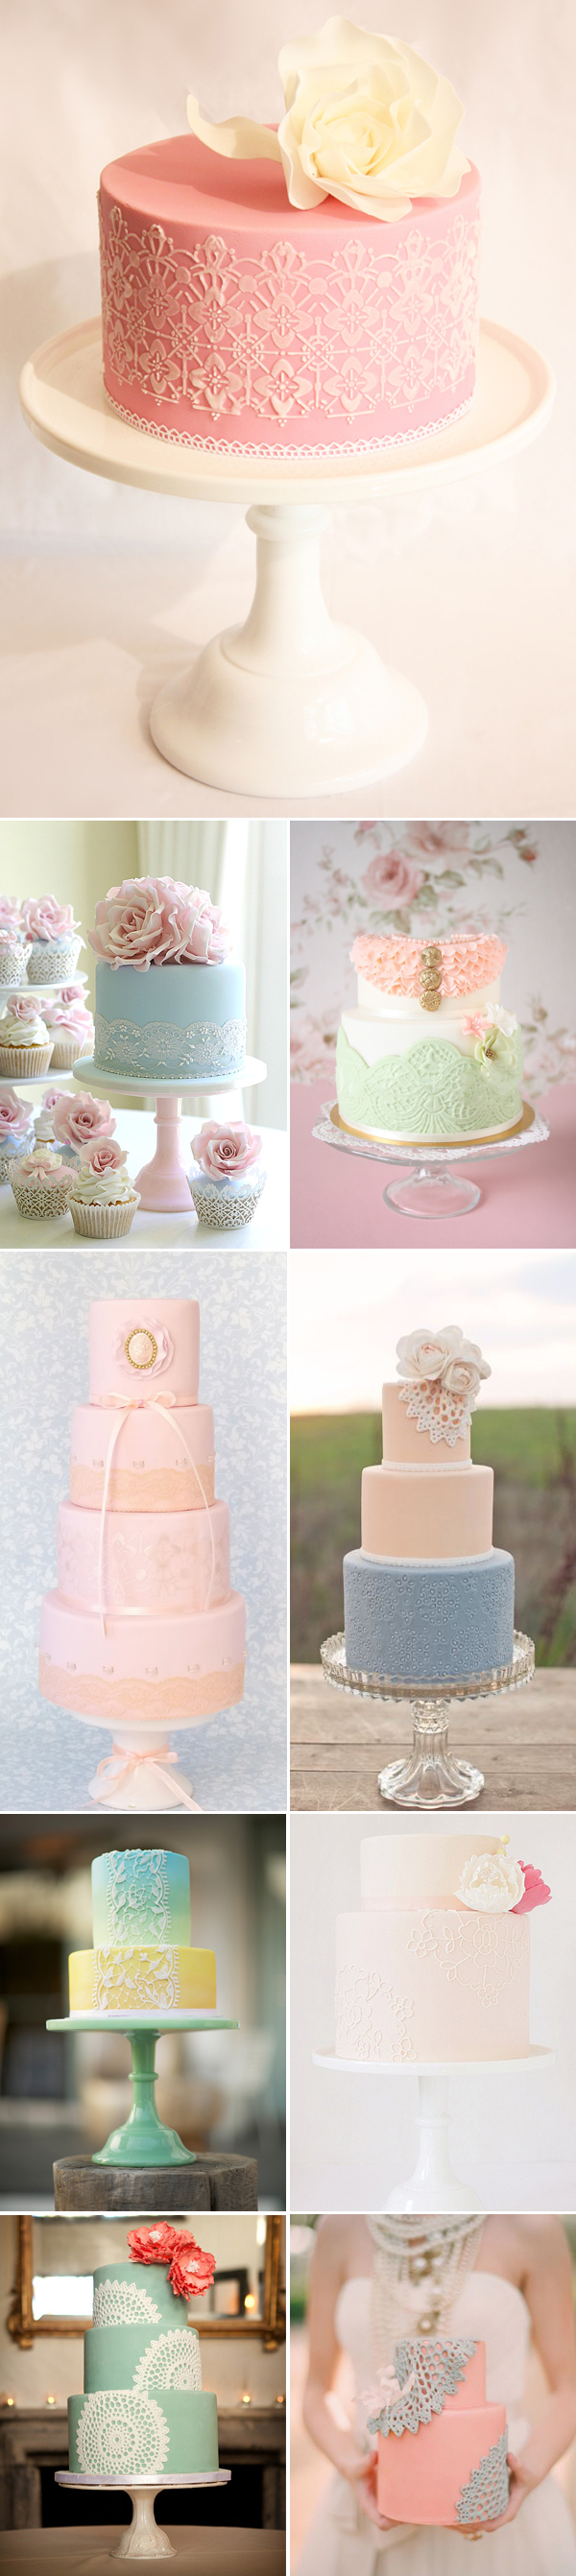 Lace wedding cake-pastel